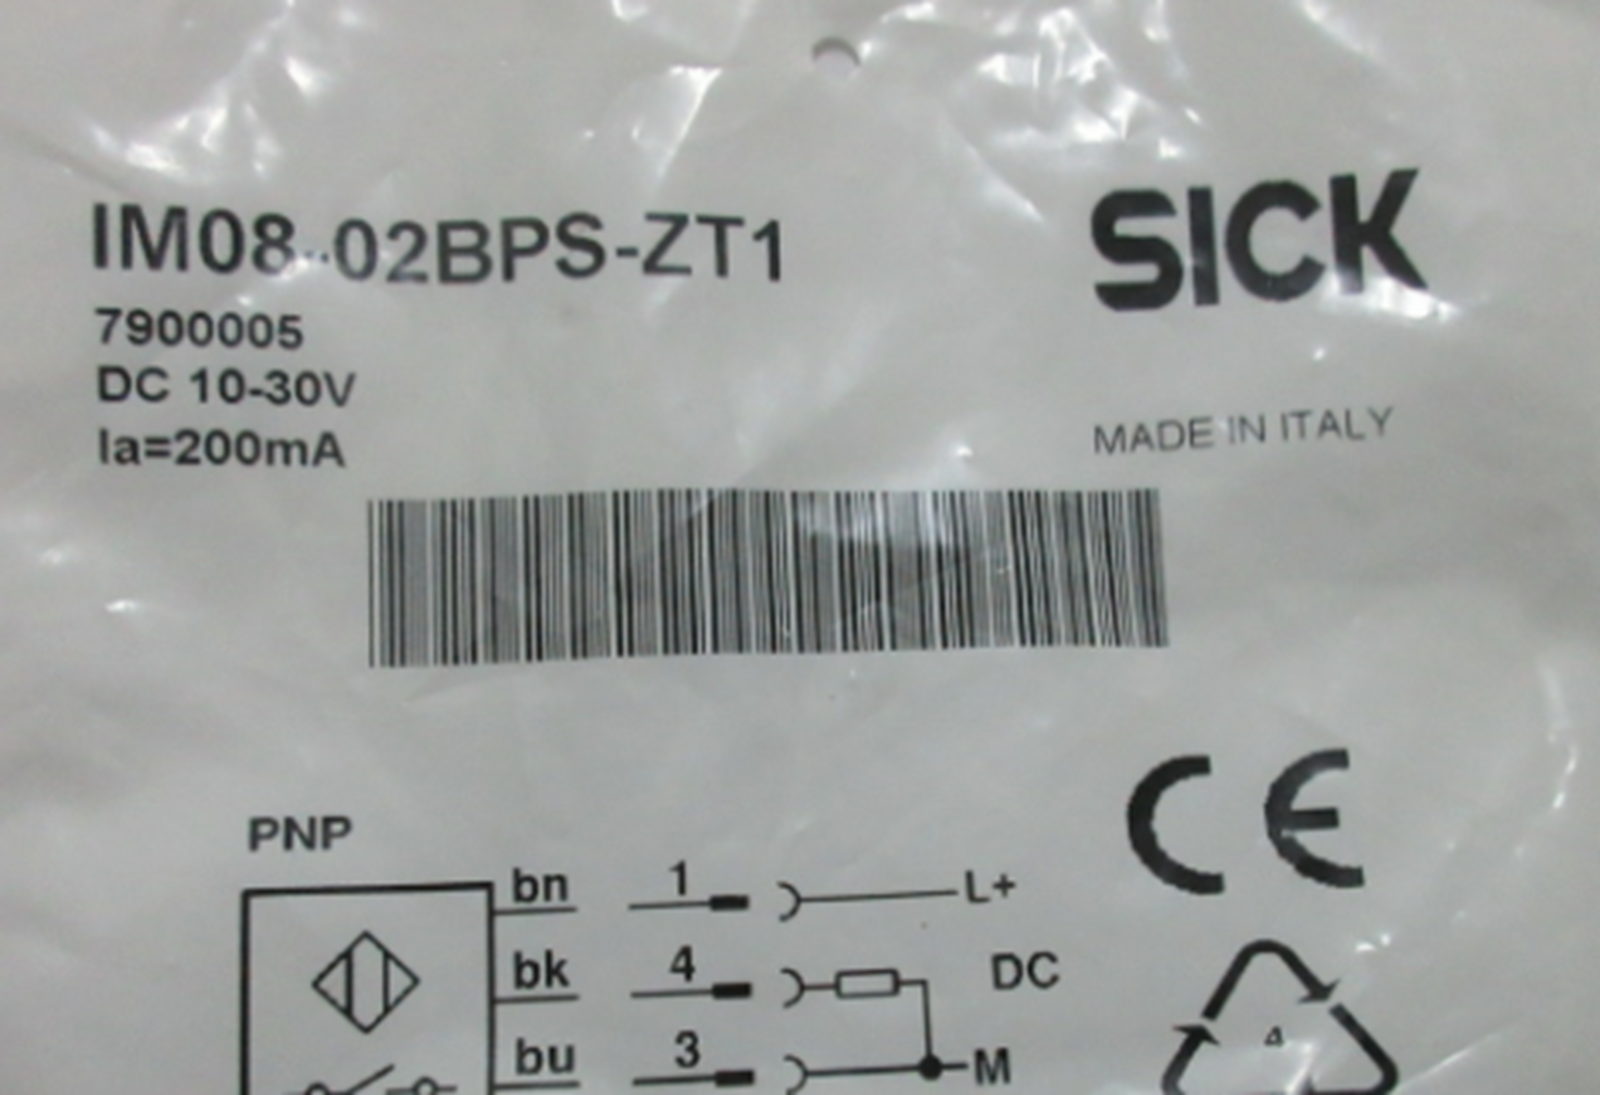 SICK IM08-02BPS-ZT1 Proximity Switches